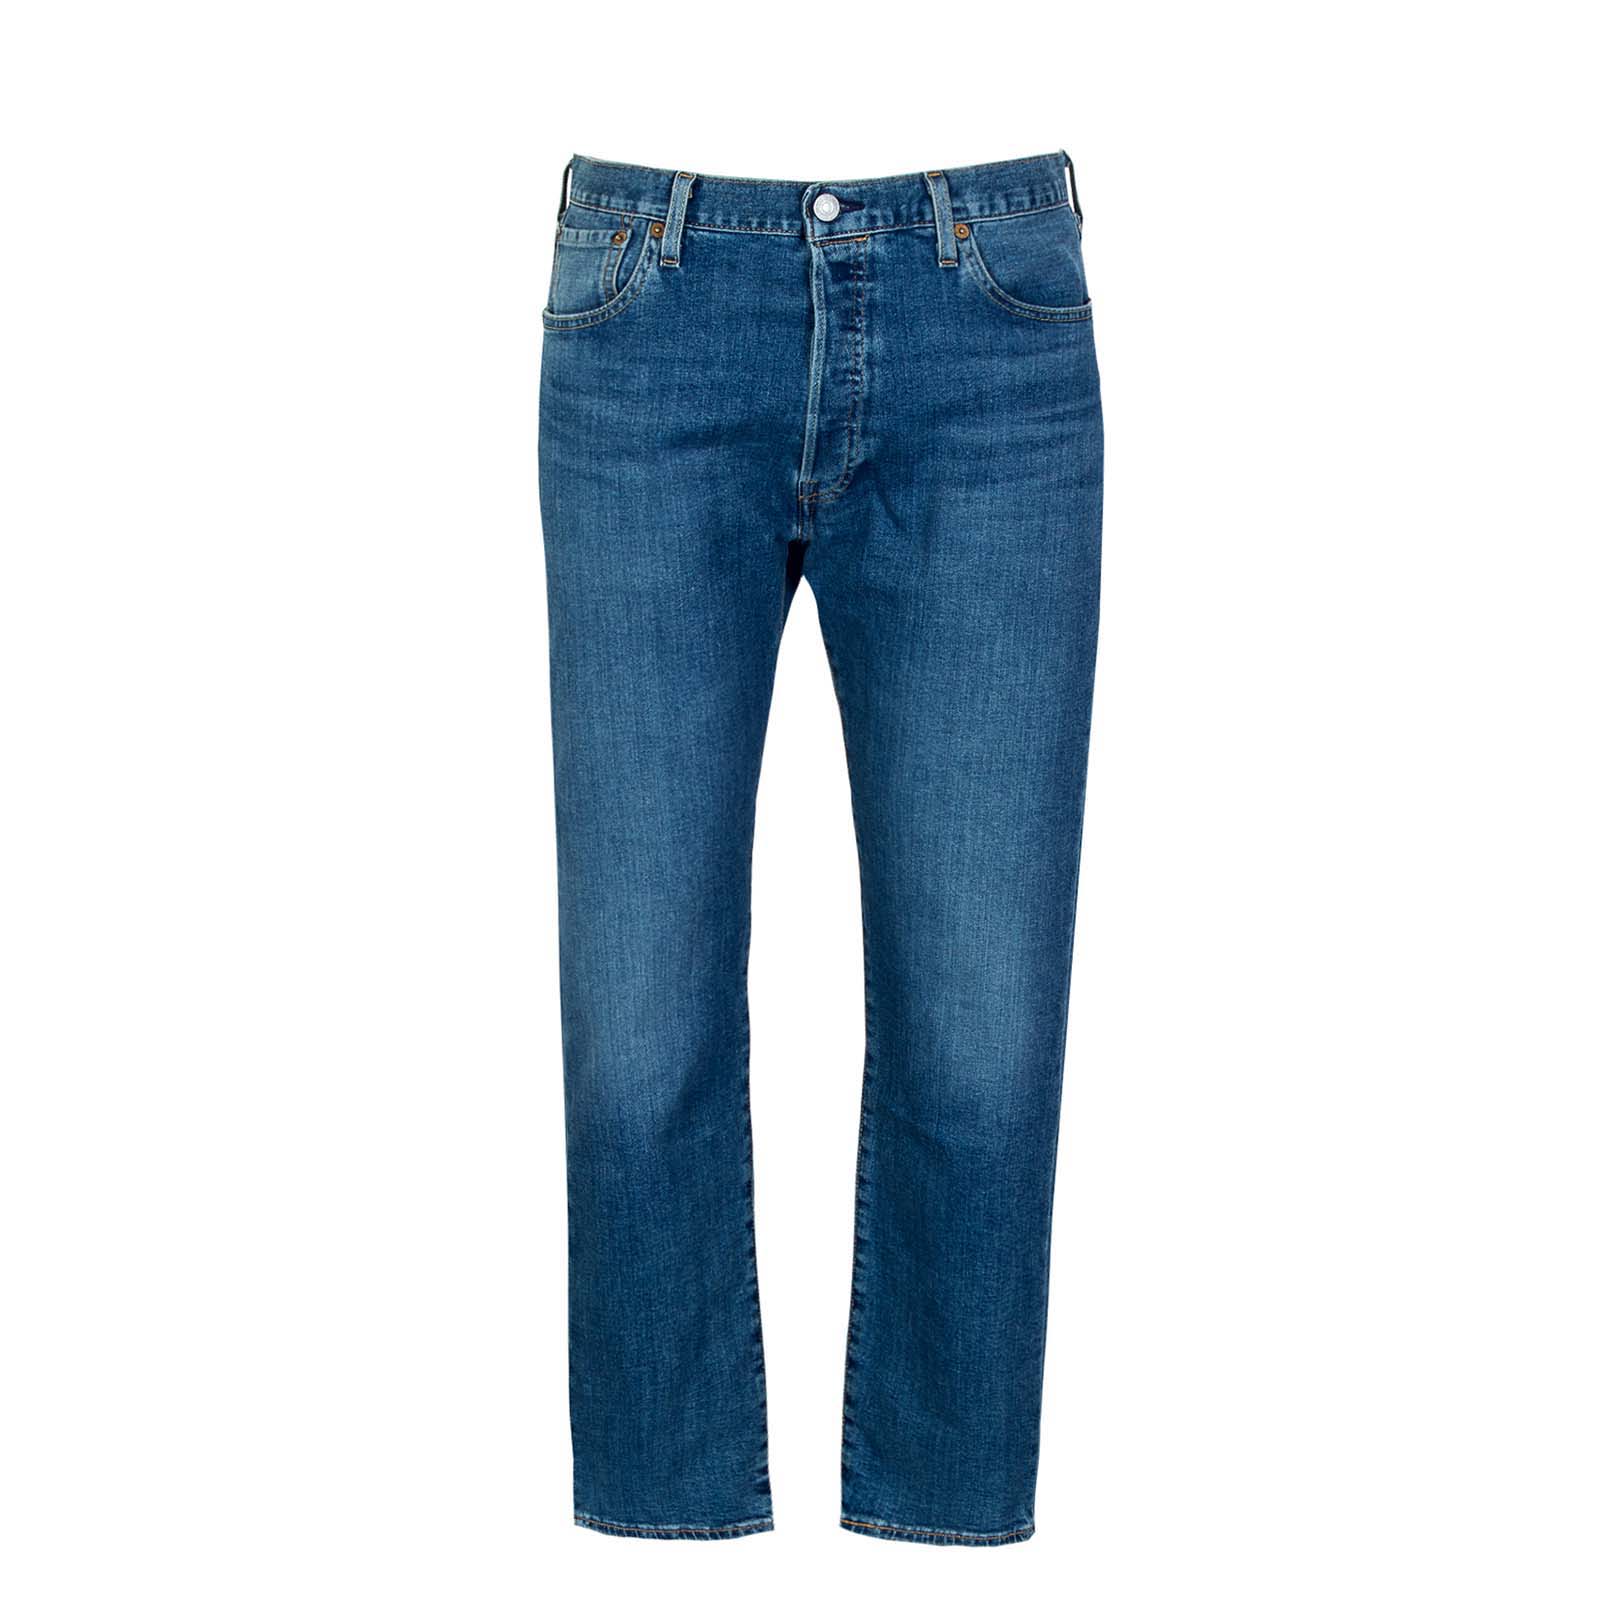 джинсы скинни levi s размер 27 синий Джинсы Levi´s, синий